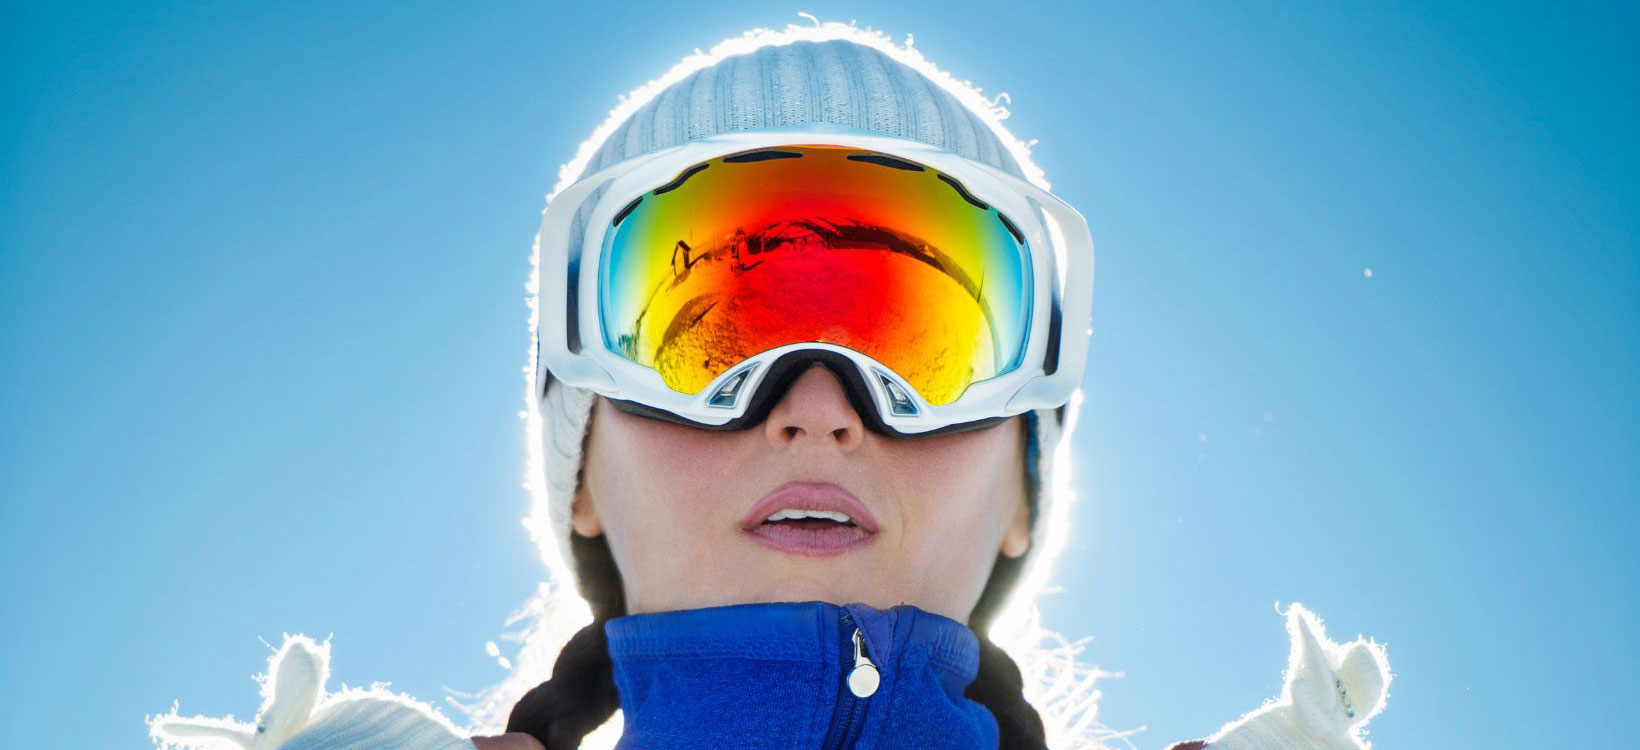 Comment se protéger du soleil lorsque l'on ski ? - Ski Aventure